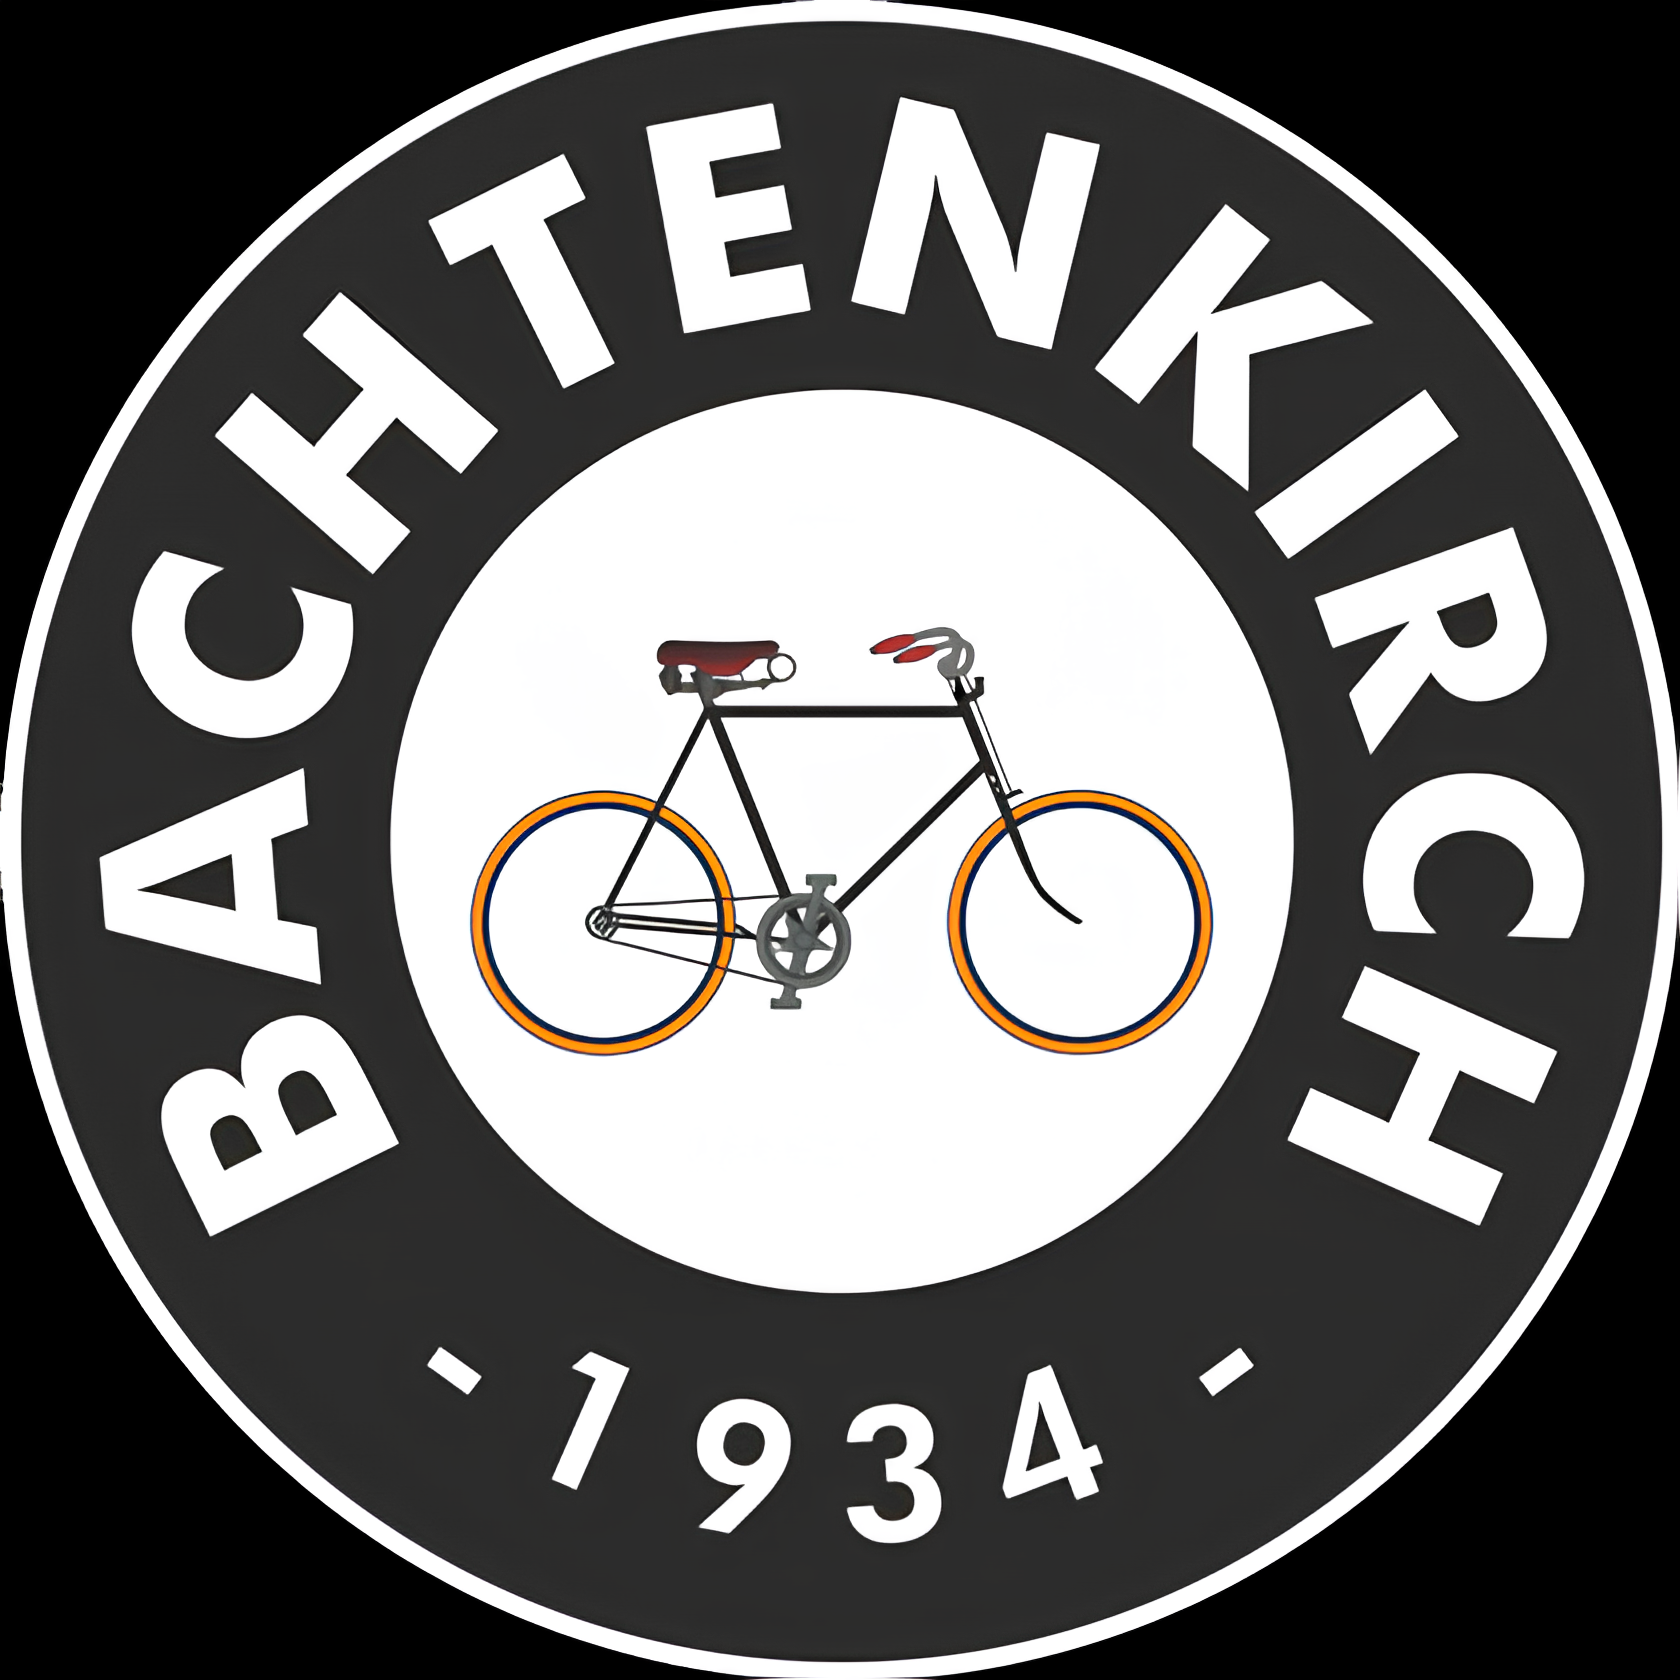 Bachtenkirch